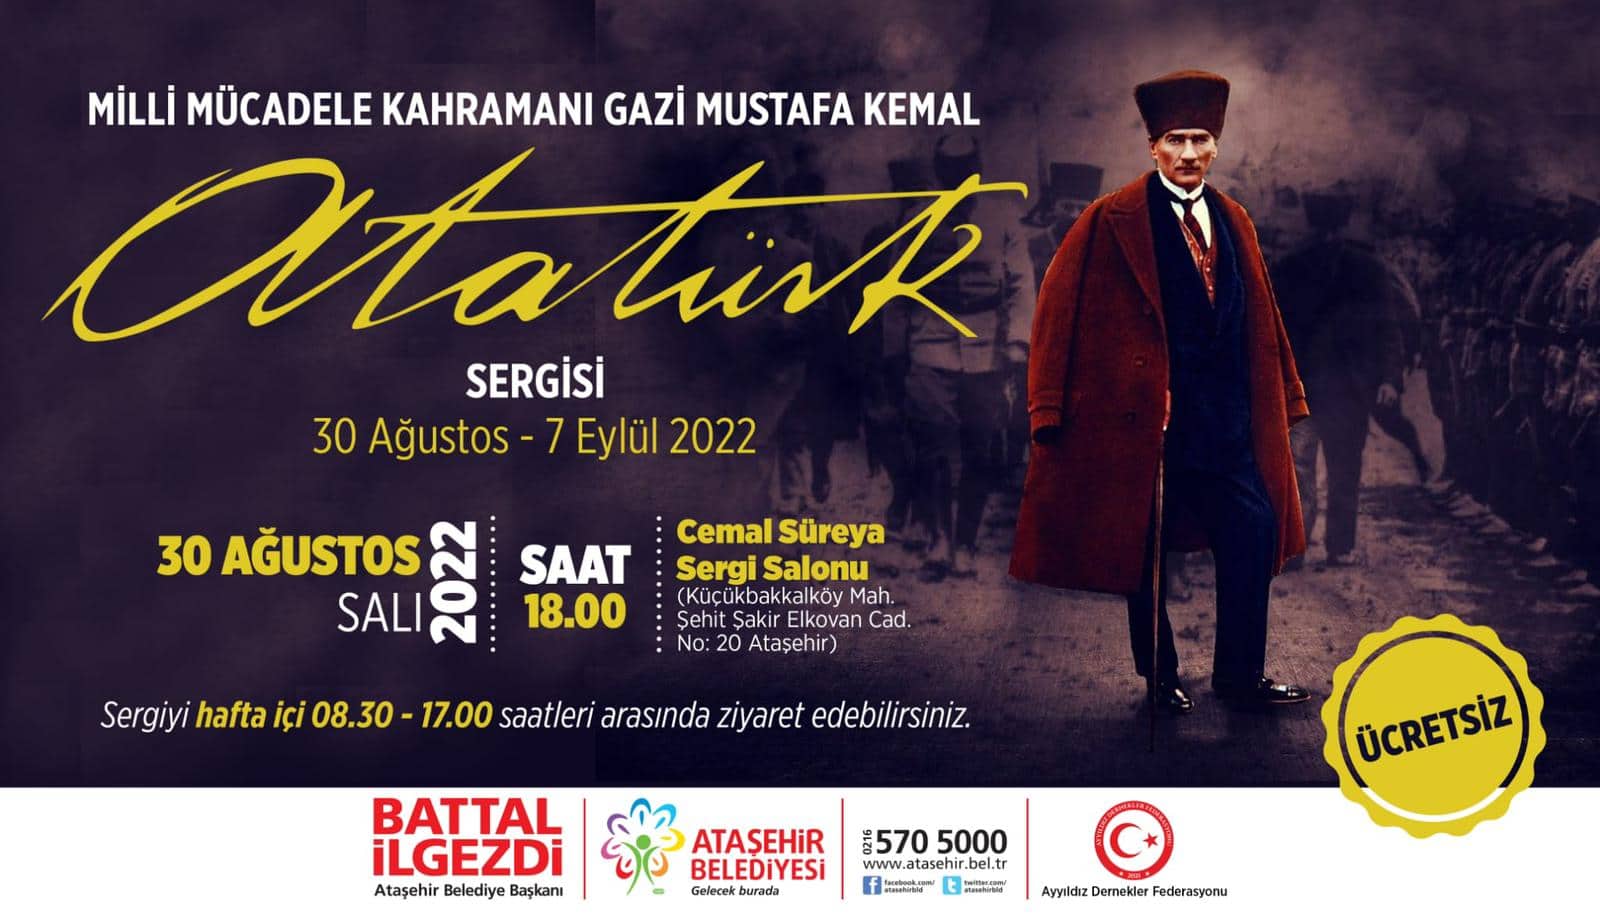 Atatürk’ün kıyafetleri Ataşehir’de sergilenecek